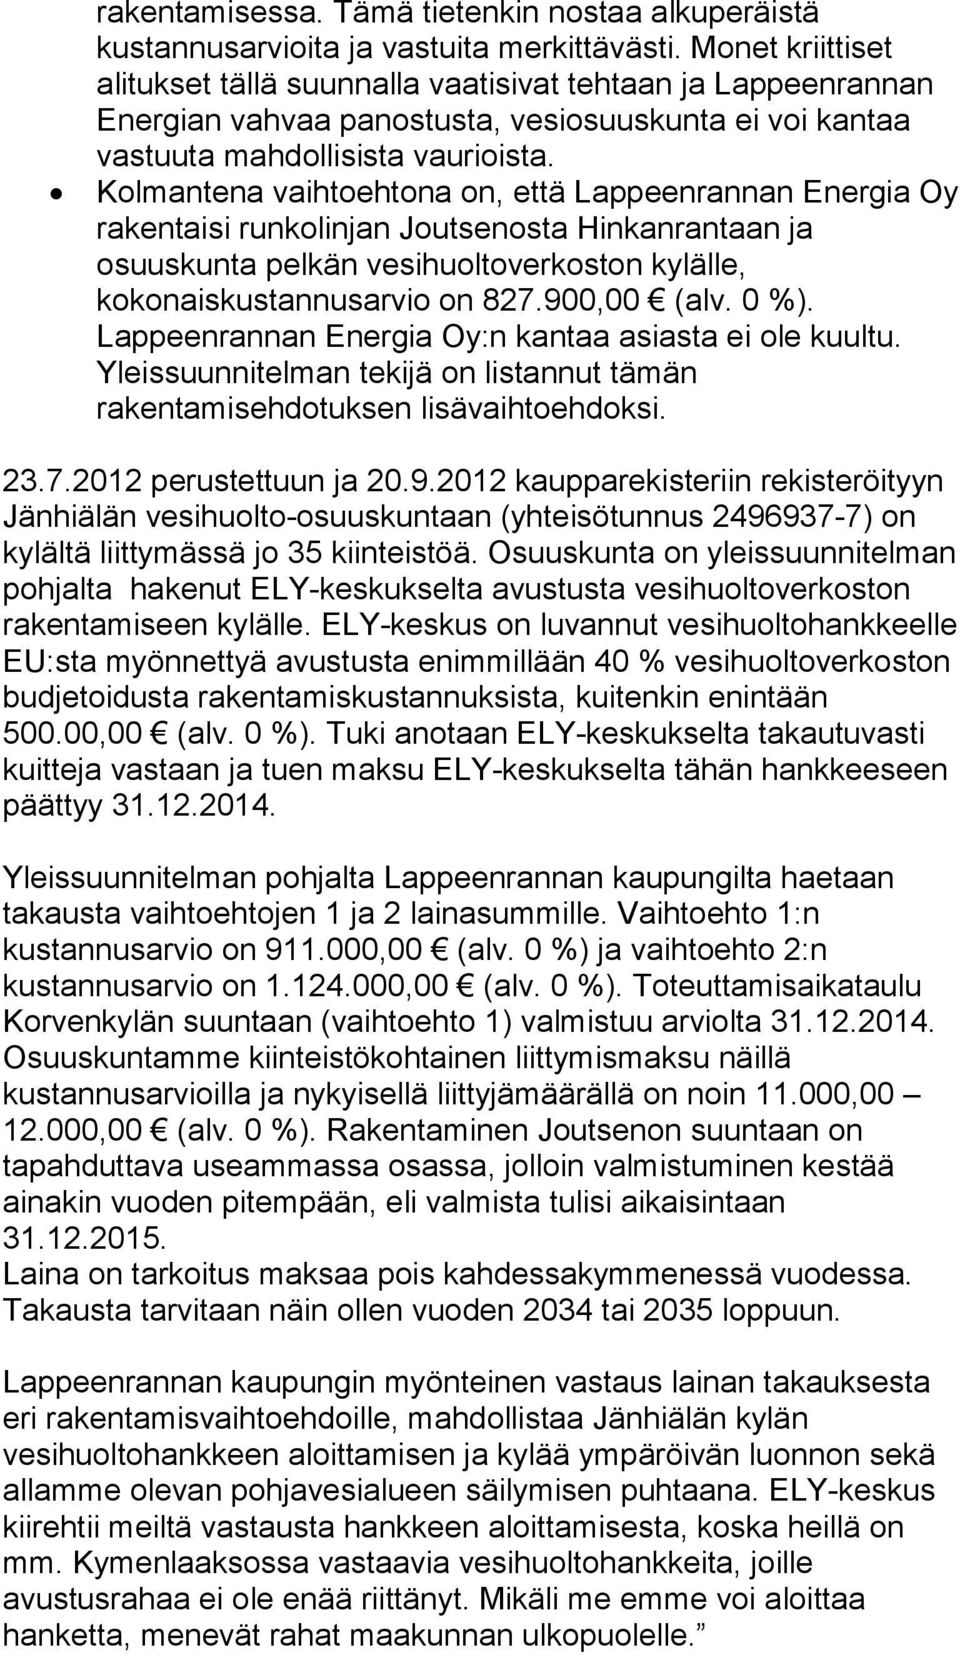 Kolmantena vaihtoehtona on, että Lappeenrannan Energia Oy rakentaisi runkolinjan Joutsenosta Hinkanrantaan ja osuuskunta pelkän vesihuoltoverkoston kylälle, kokonaiskustannusarvio on 827.900,00 (alv.